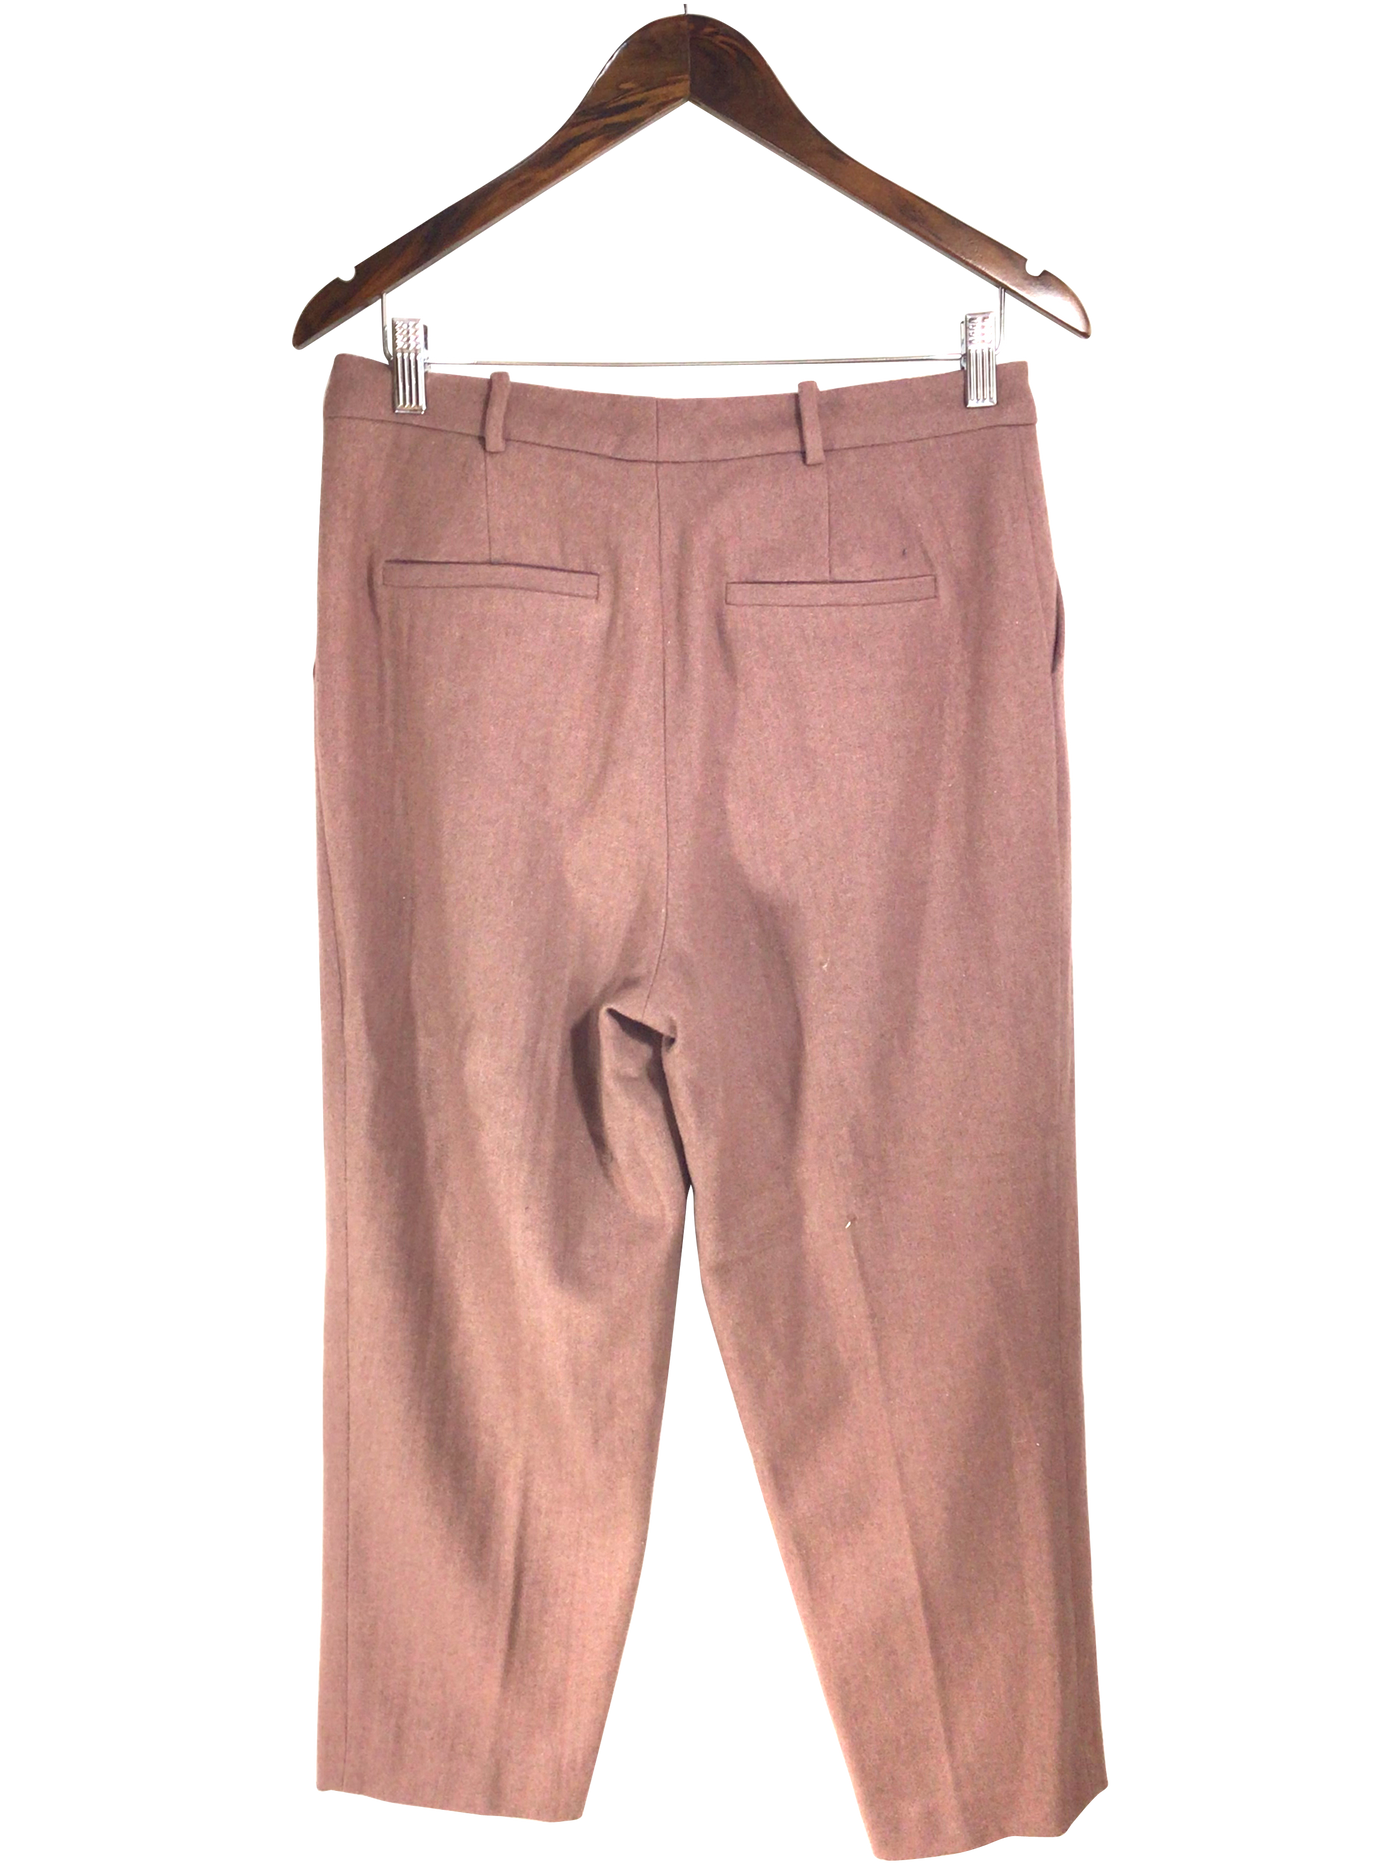 CONTEMPORAINE Women Work Pants Regular fit in Pink - Size 8 | 21.99 $ KOOP